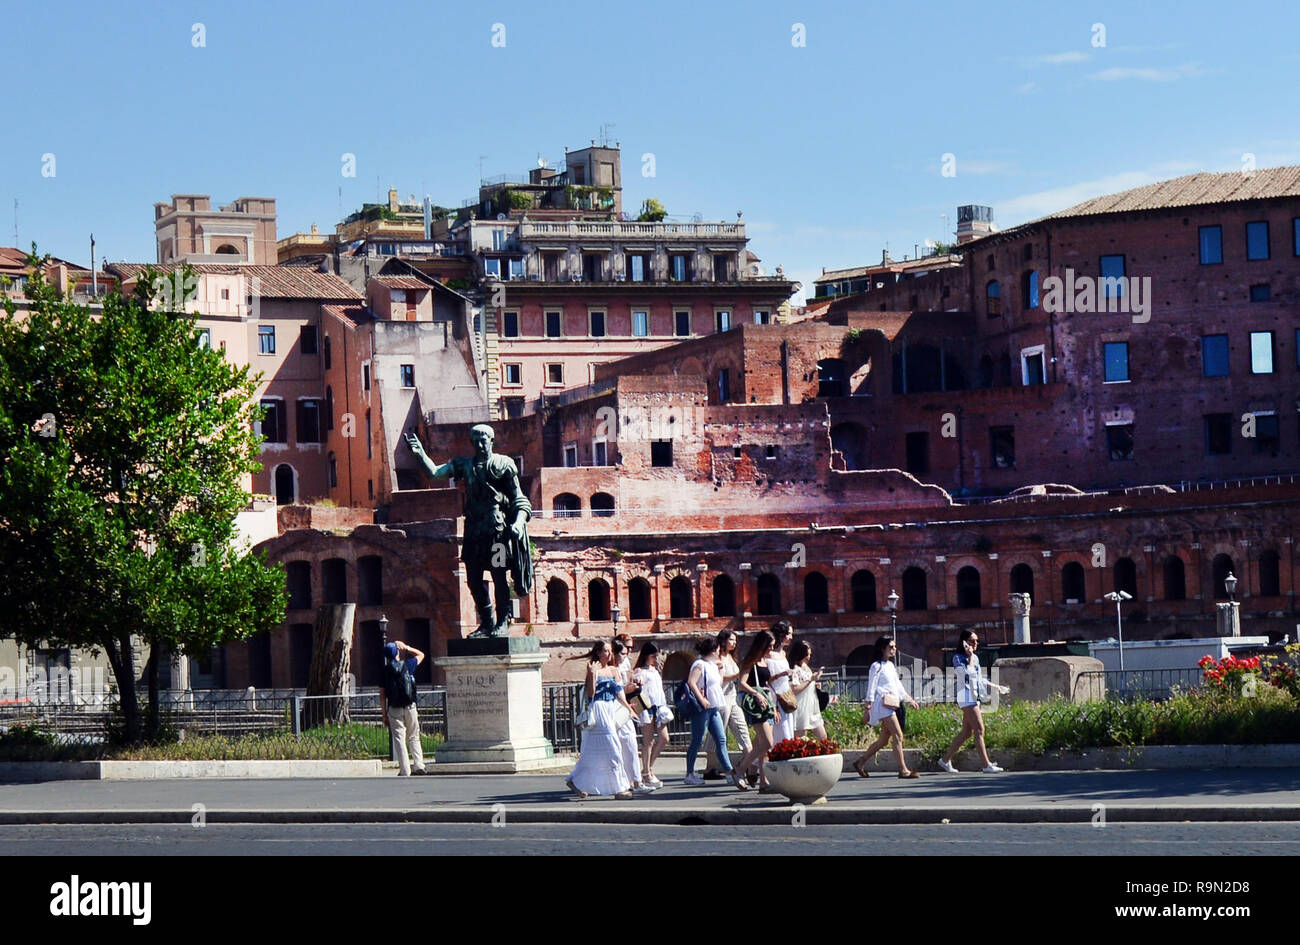 Via dei Fori Imperiali in Rome. Stock Photo